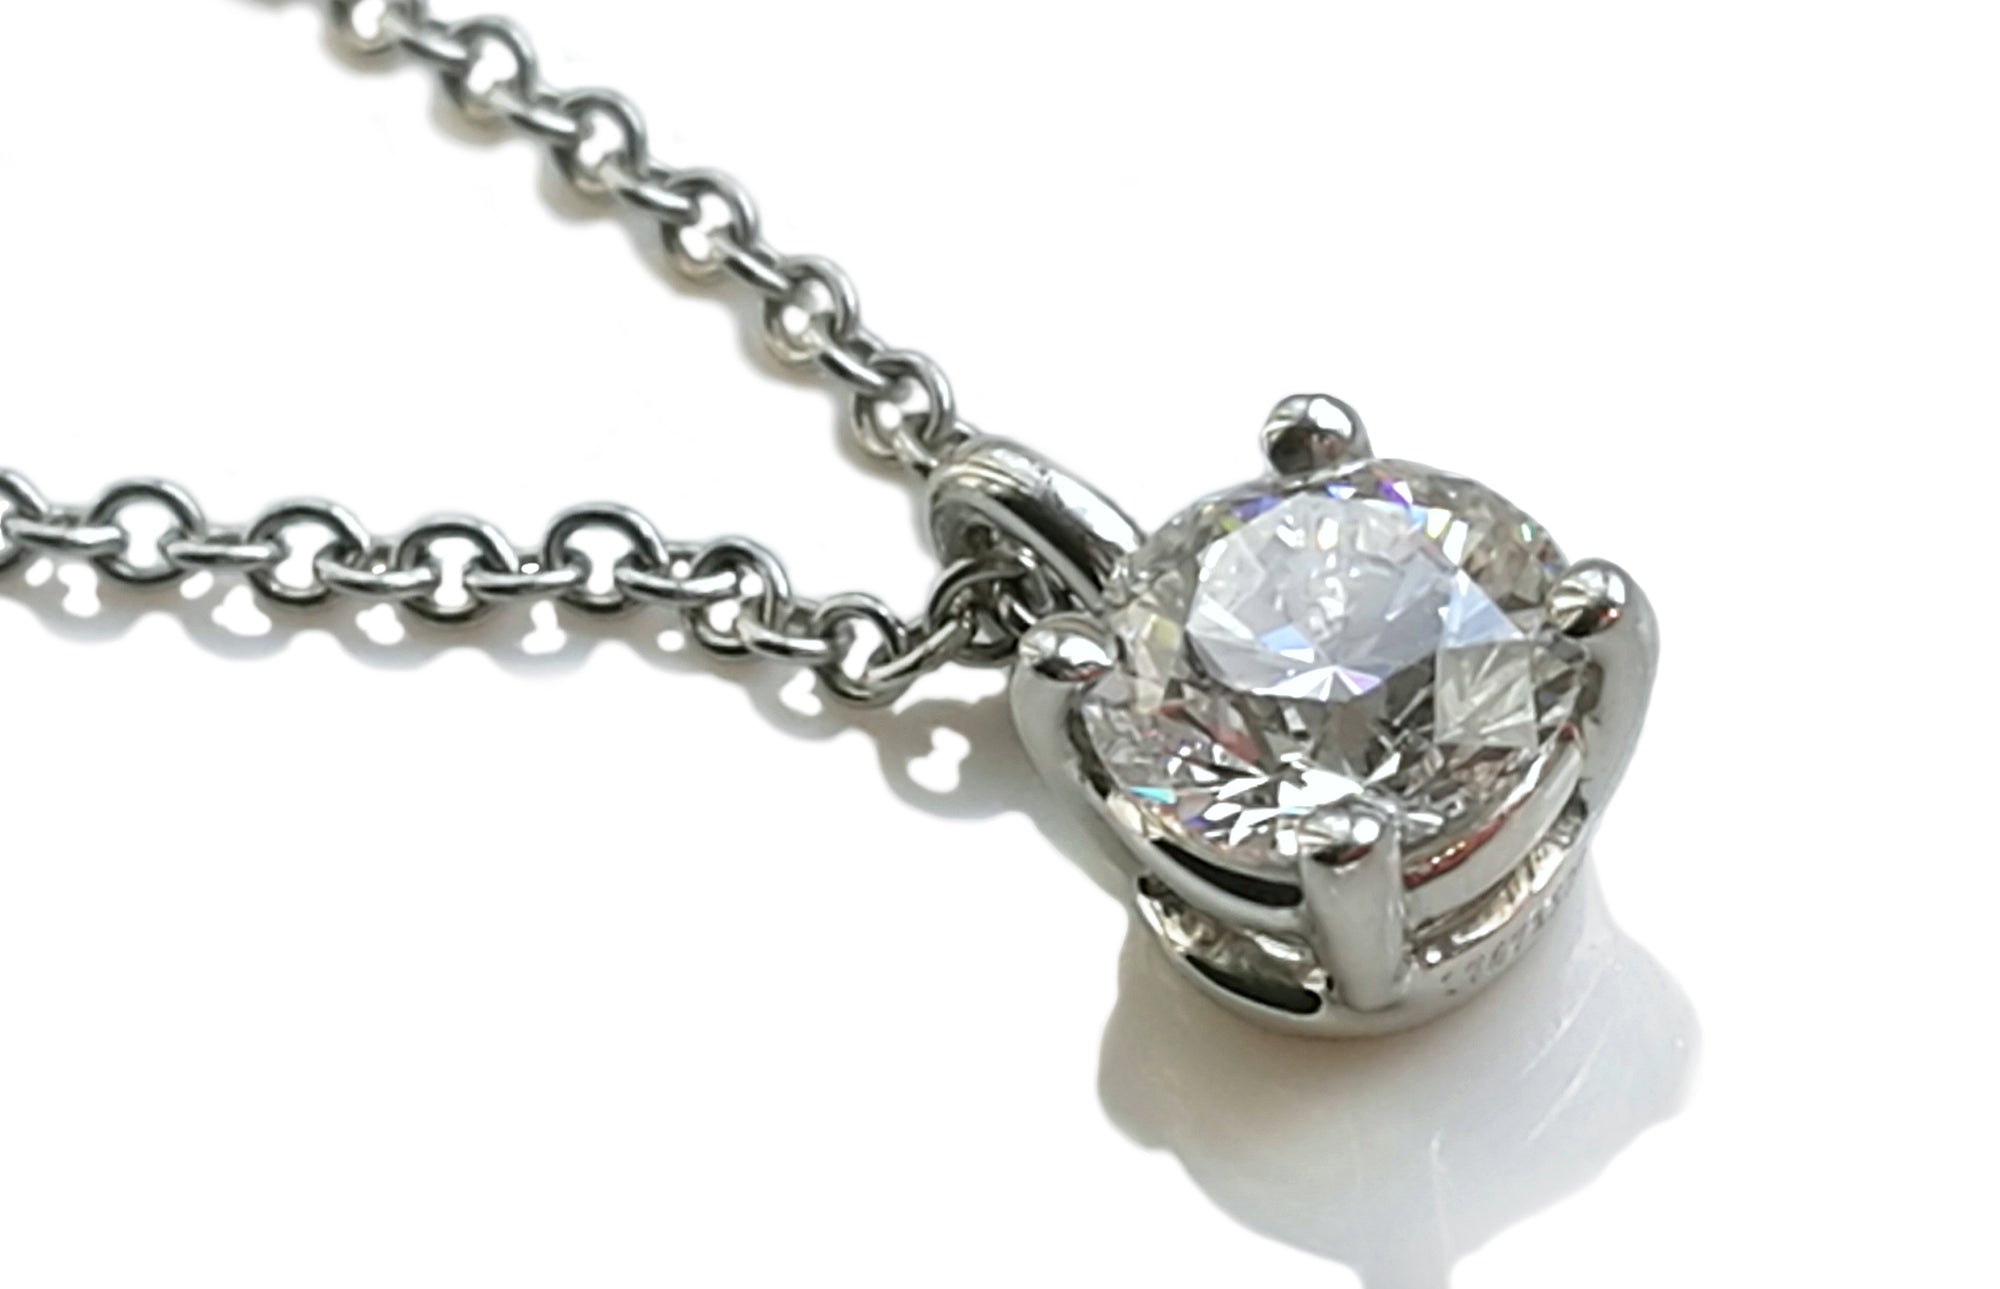 Tiffany & Co. 0.40ct G/VS2 Round Brilliant Diamond Pendant / Necklace